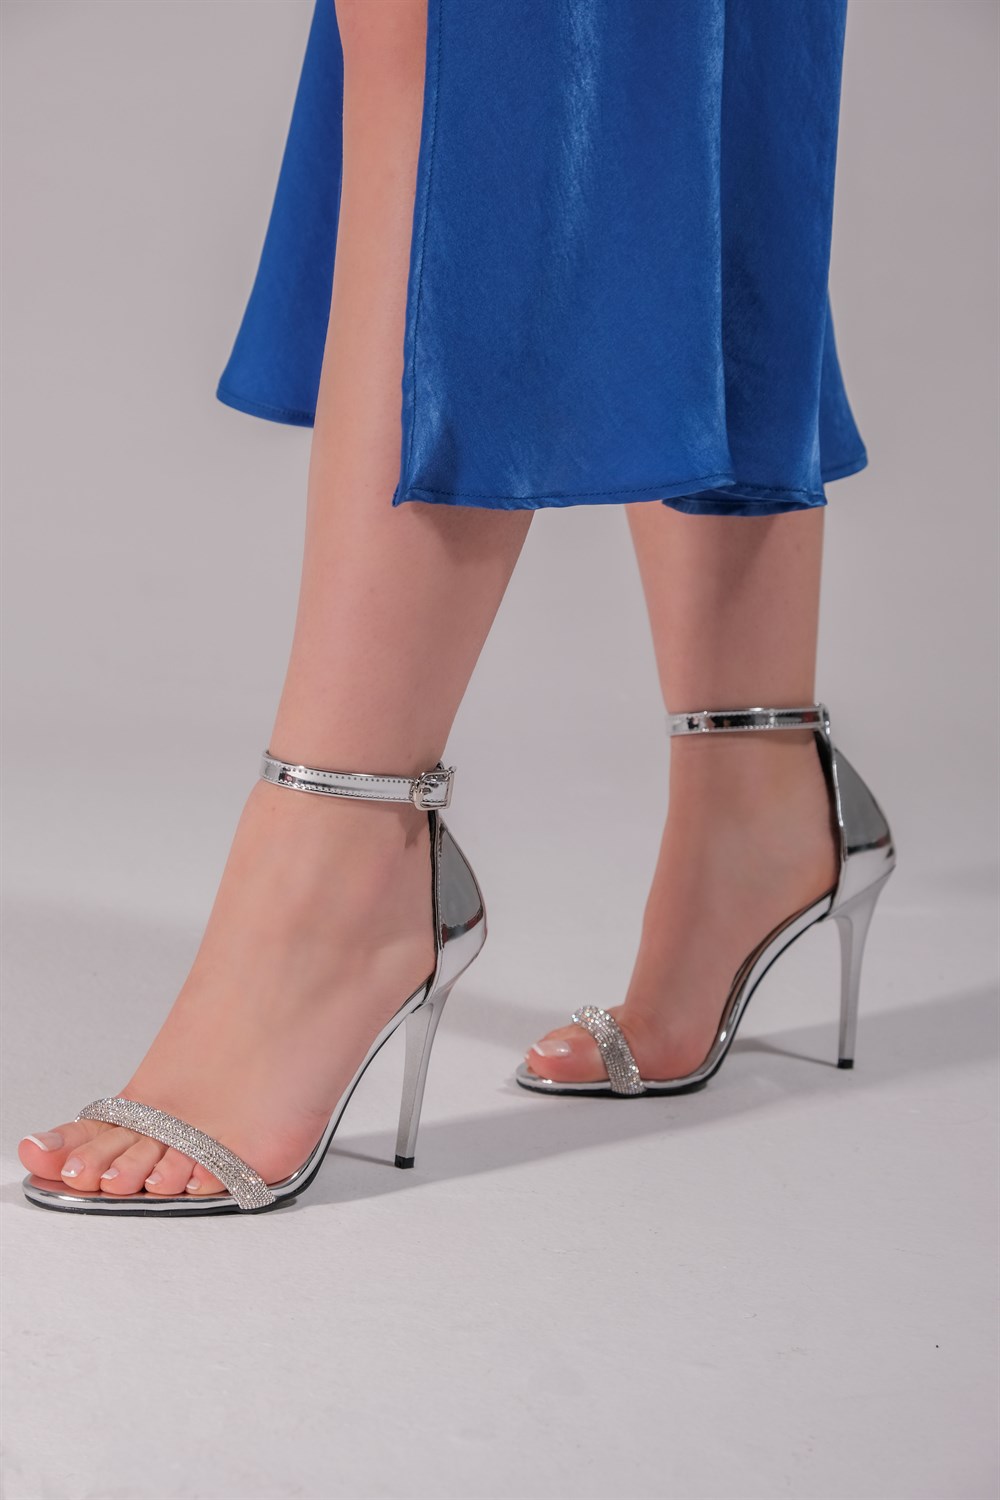 Önü Açık Tek Bant Taş Detaylı Bilekten Bağlamalı Topuklu Ayakkabı Vanessa  Model | SOVRANA